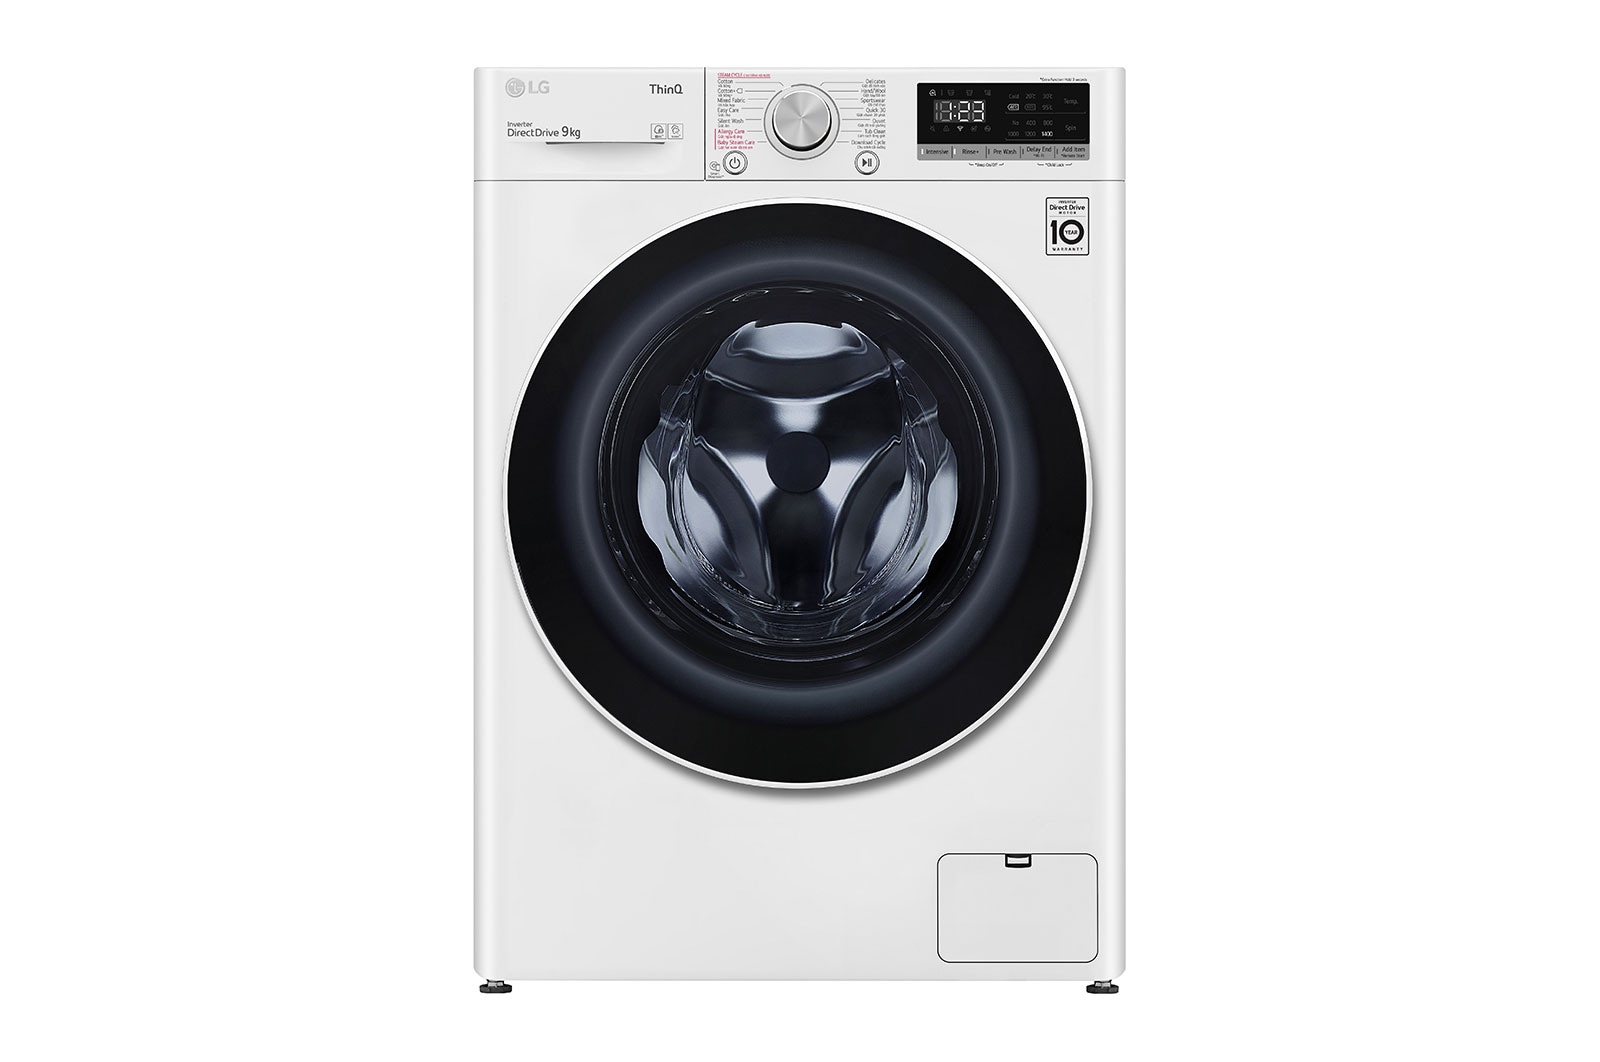 LG máy giặt: Xem ngay hình ảnh chiếc máy giặt của LG, với những tính năng thông minh và hiện đại, sẽ giúp bạn tiết kiệm thời gian và công sức cho công việc gia đình mỗi ngày.